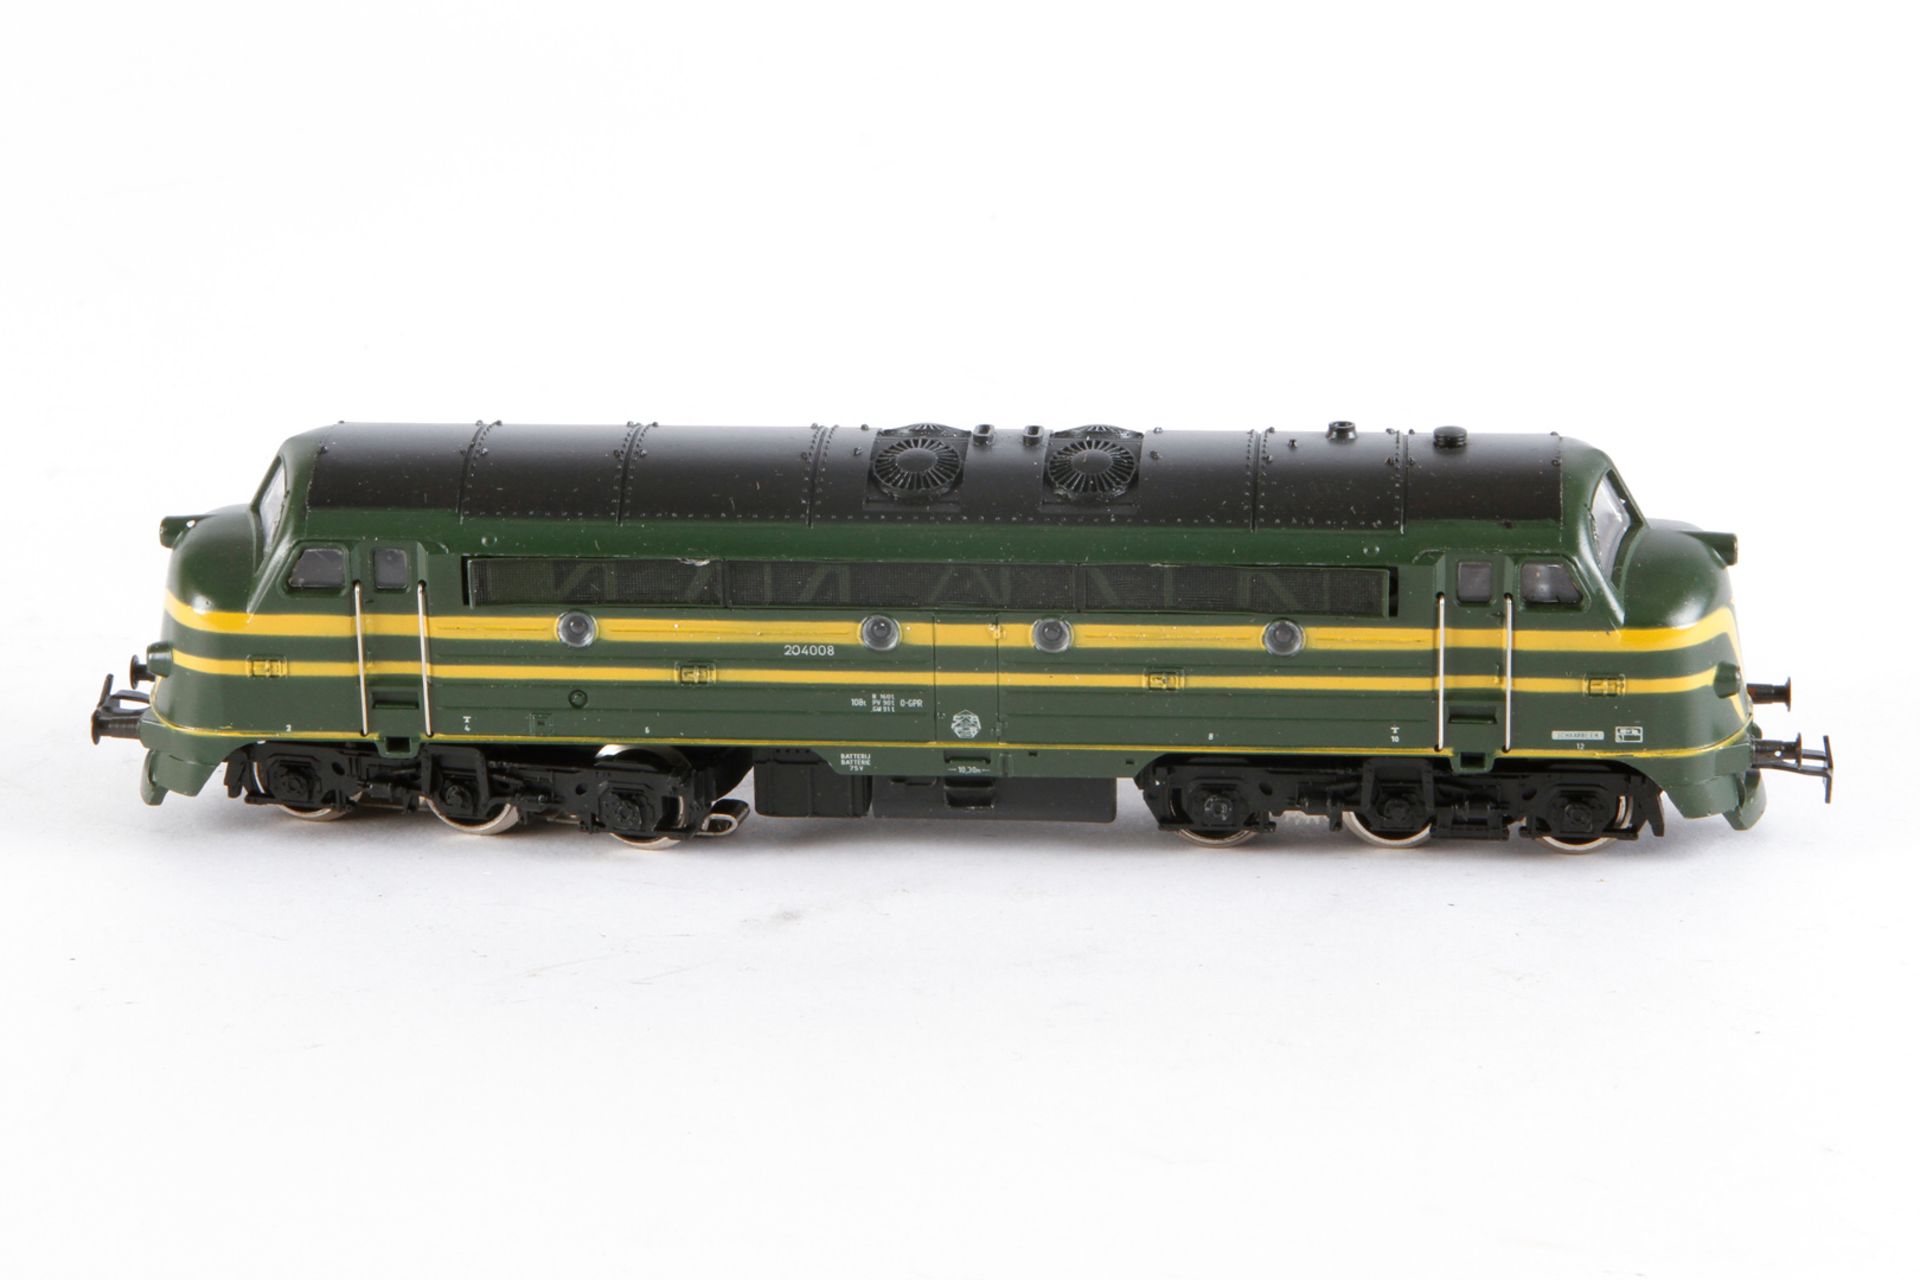 Märklin Diesellok ”204 008” 3066, S H0, grün/gelb, Alterungsspuren, Originalkarton, Z 2